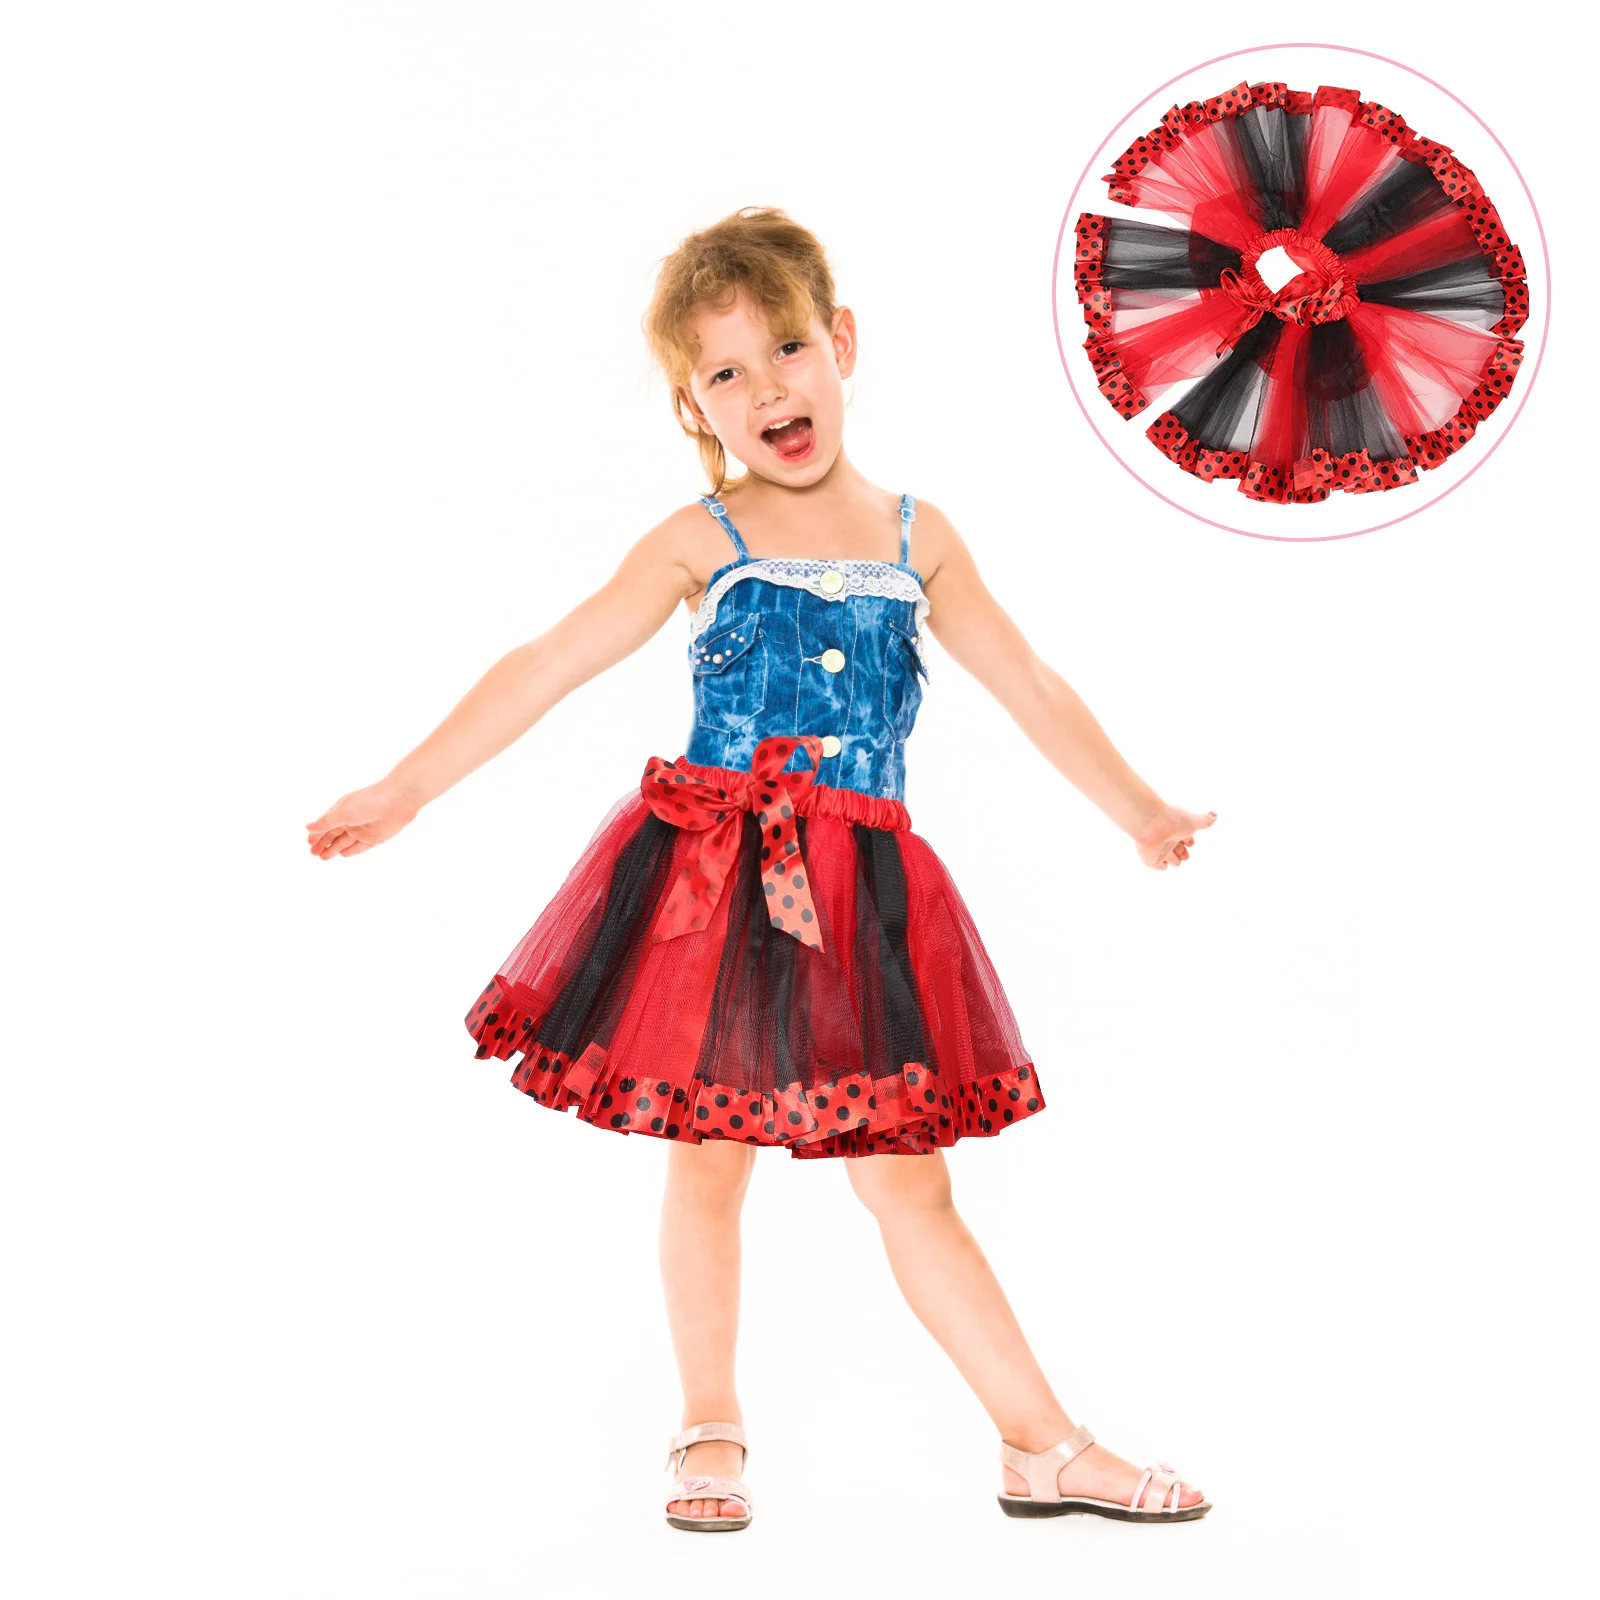 

Tulle Skirt Toddler Girl Tutu Skirt Carnival Party Skirt Stage Performance Costume Prop for Ballet Dance